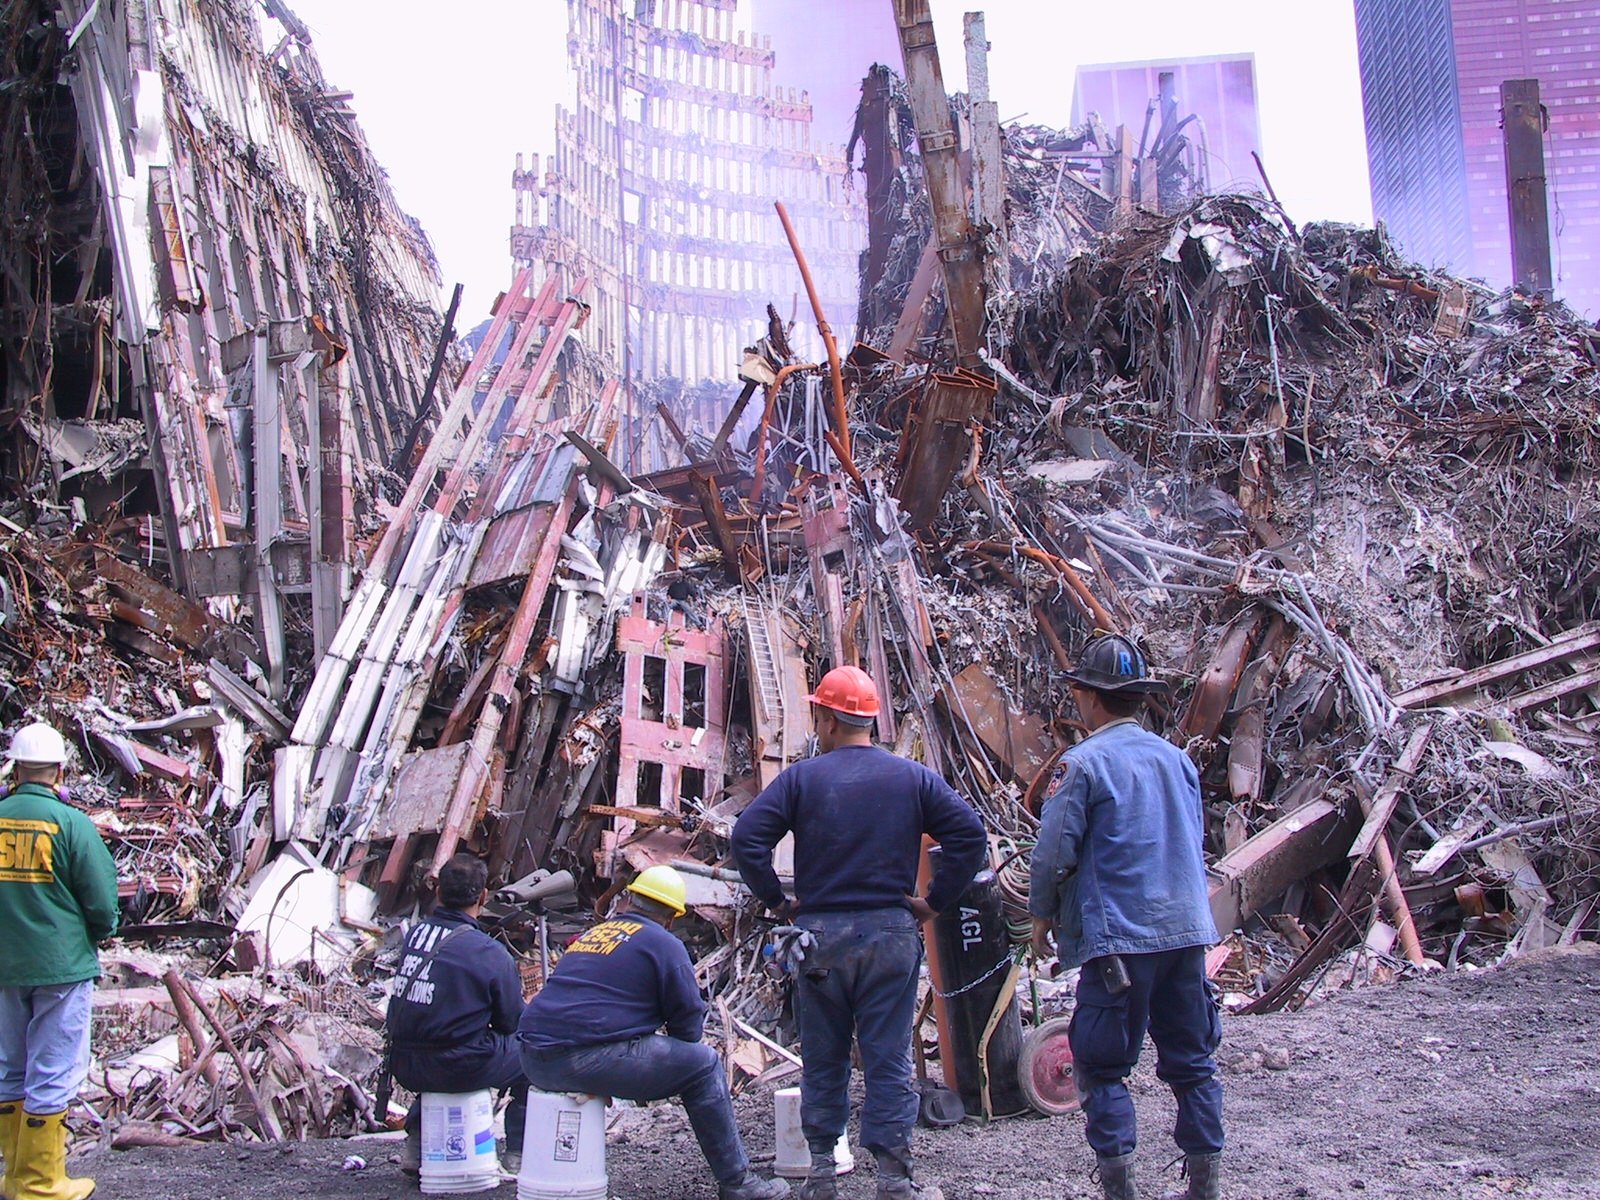 22 ноября 2001. Башни-Близнецы 11 сентября 2001. Жертвы 11 сентября 2001 года. Теракт 11 сентября башни. Башни Близнецы 11 сентября жертвы.